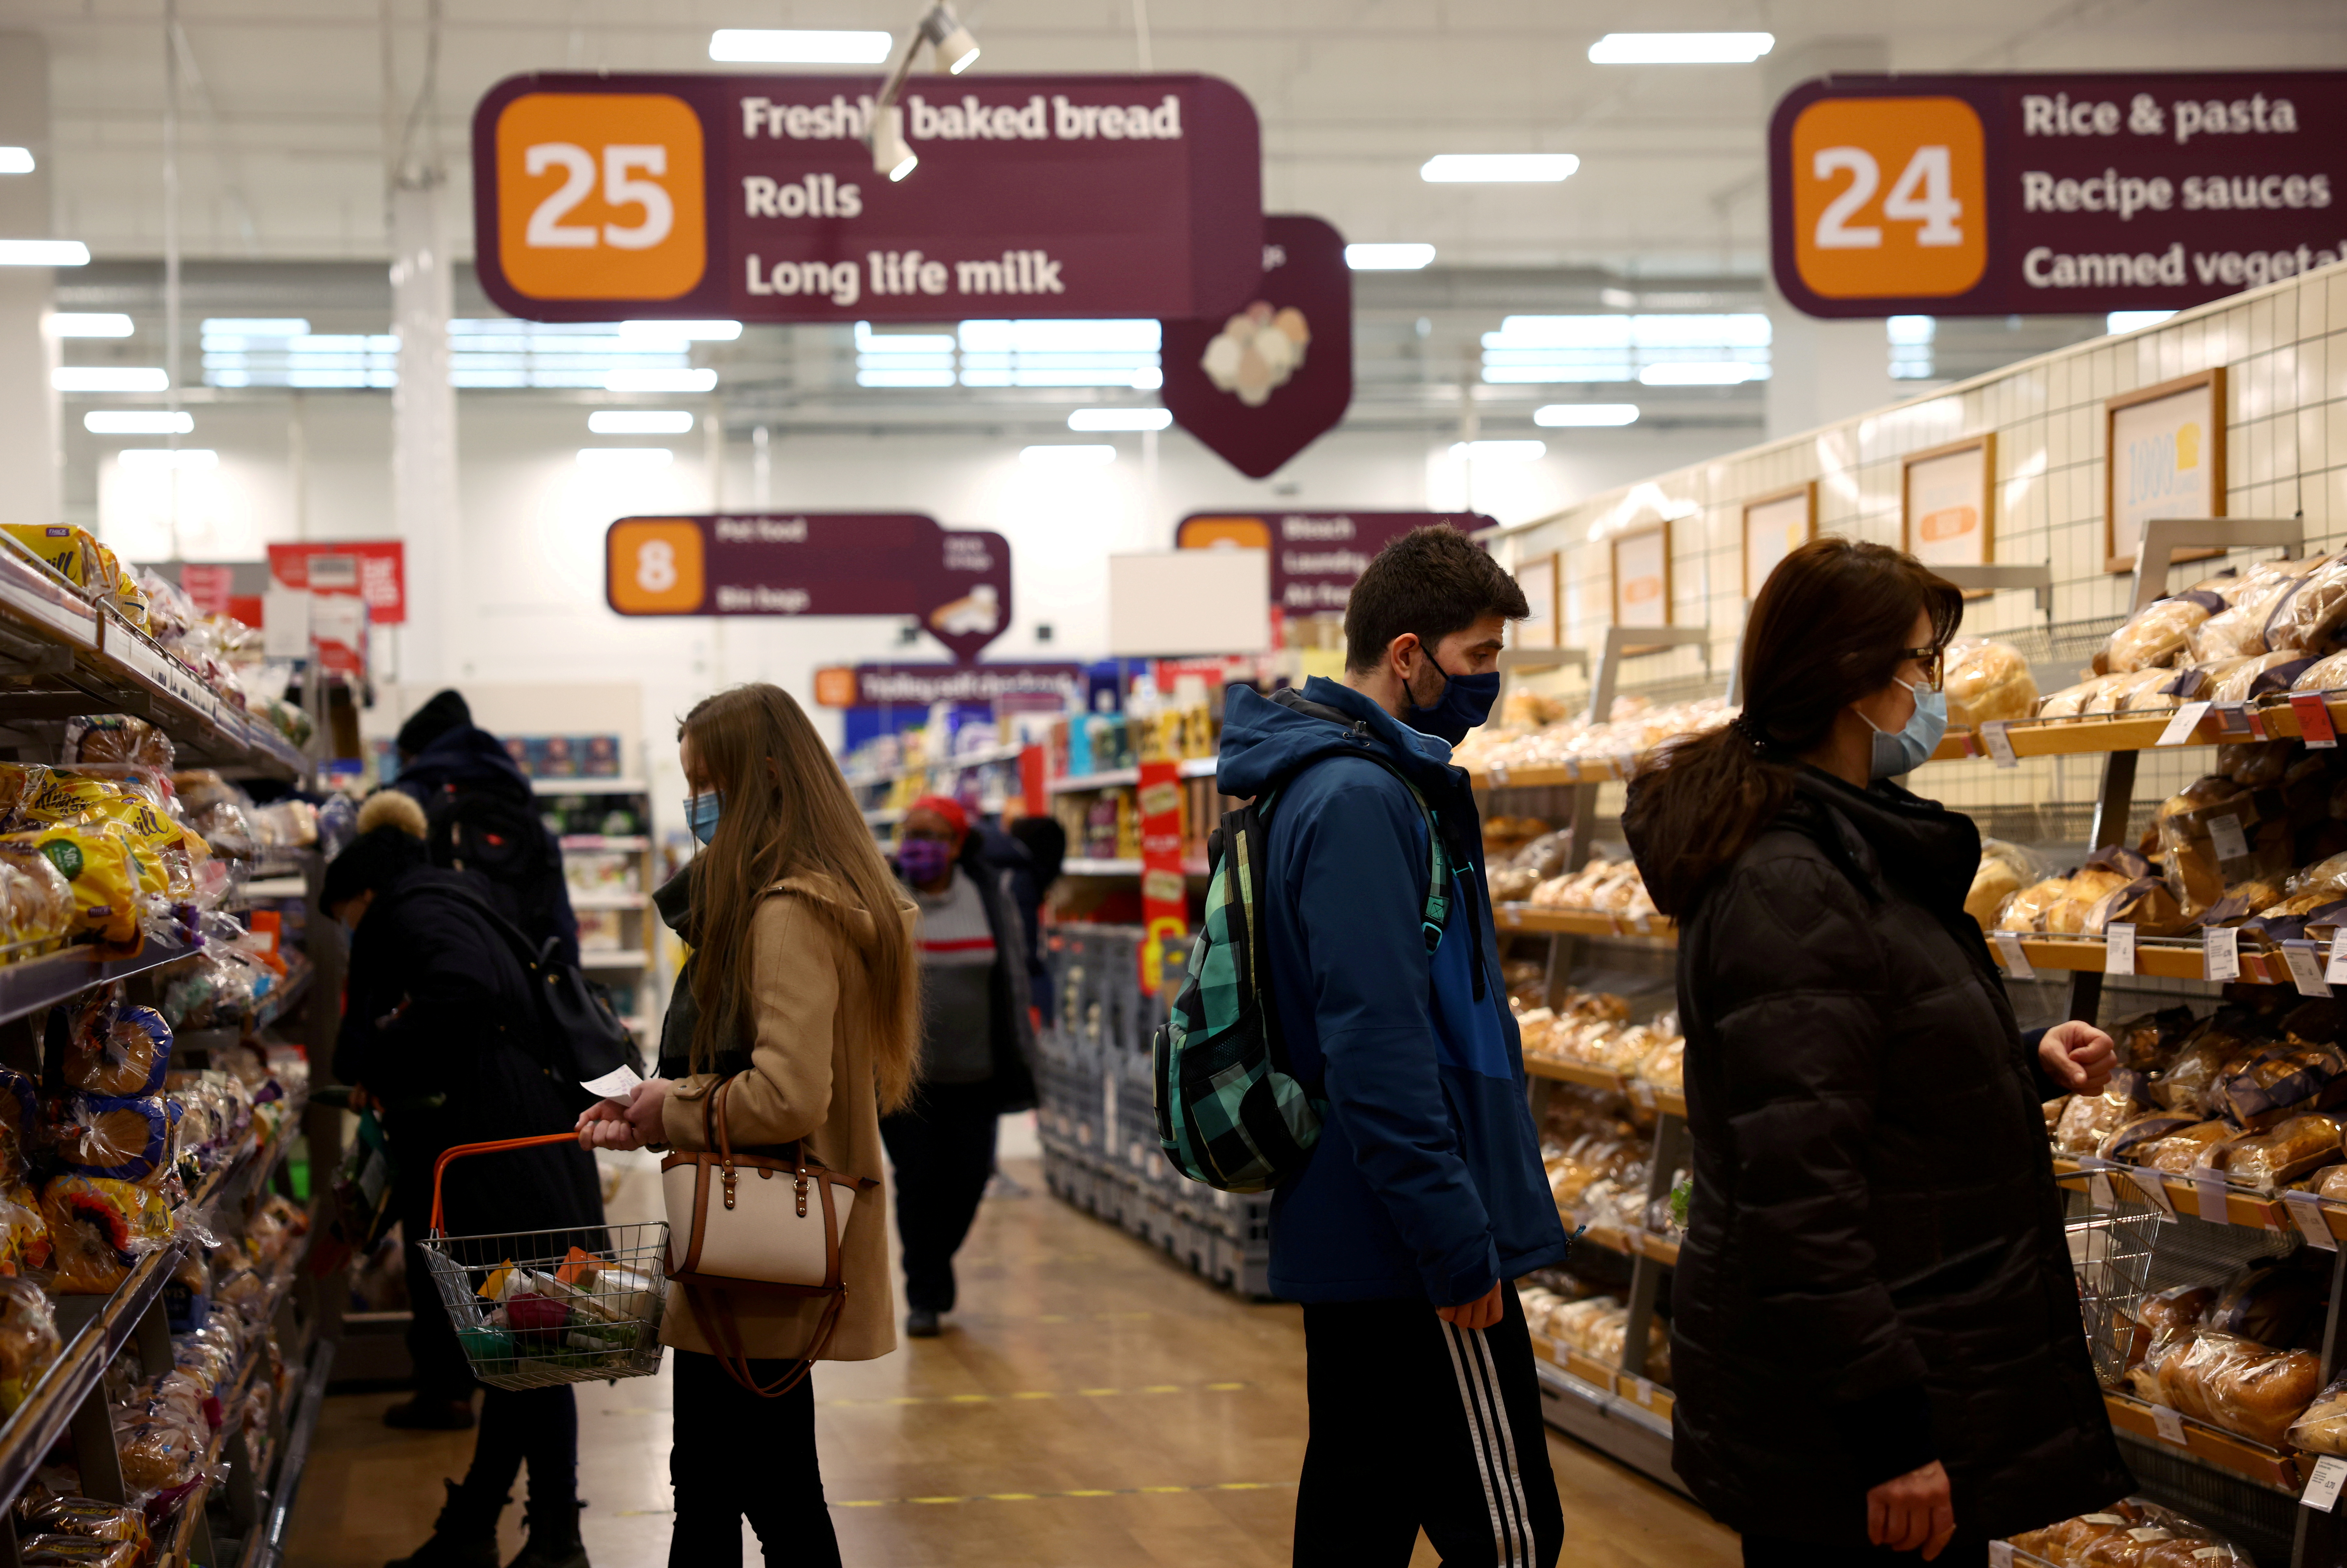 FOTO DE ARCHIVO: Supermercado Sainsbury's, en medio del brote de la enfermedad del coronavirus (COVID-19), en Londres, Gran Bretaña 12 de enero de 2021. REUTERS/Henry Nicholls